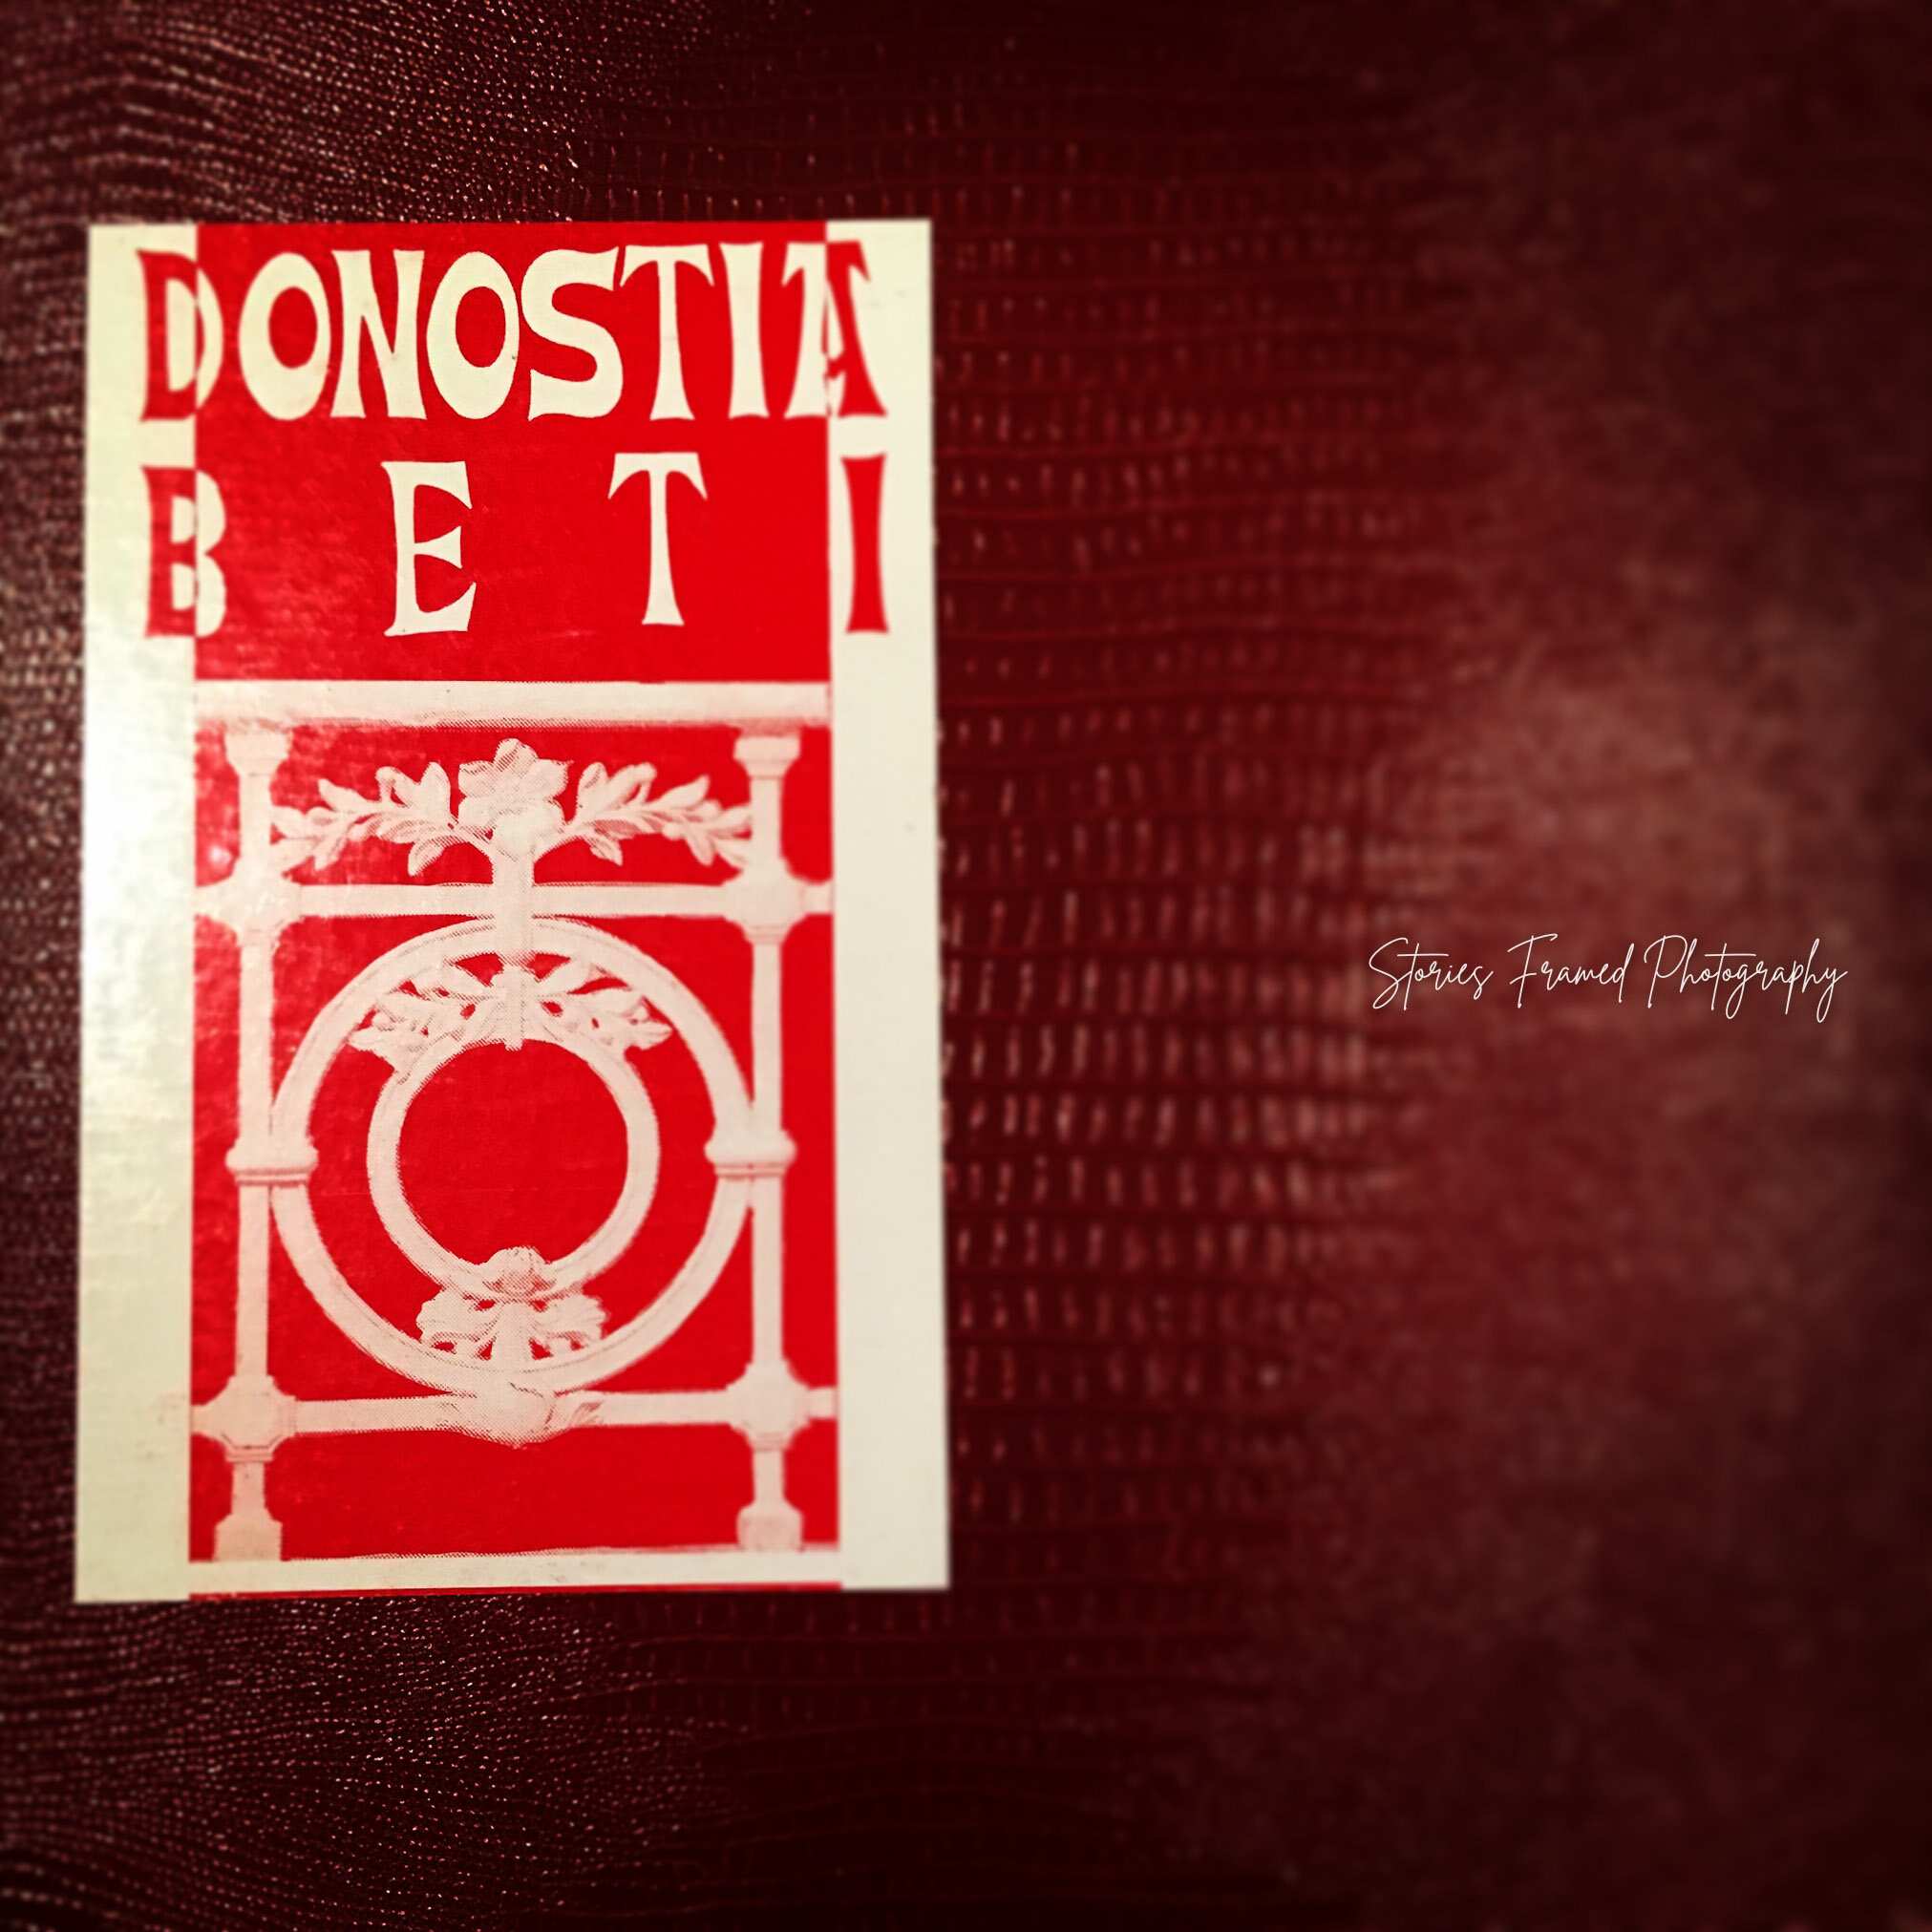 05-31-days-of-joy-red-donostia-album.jpg